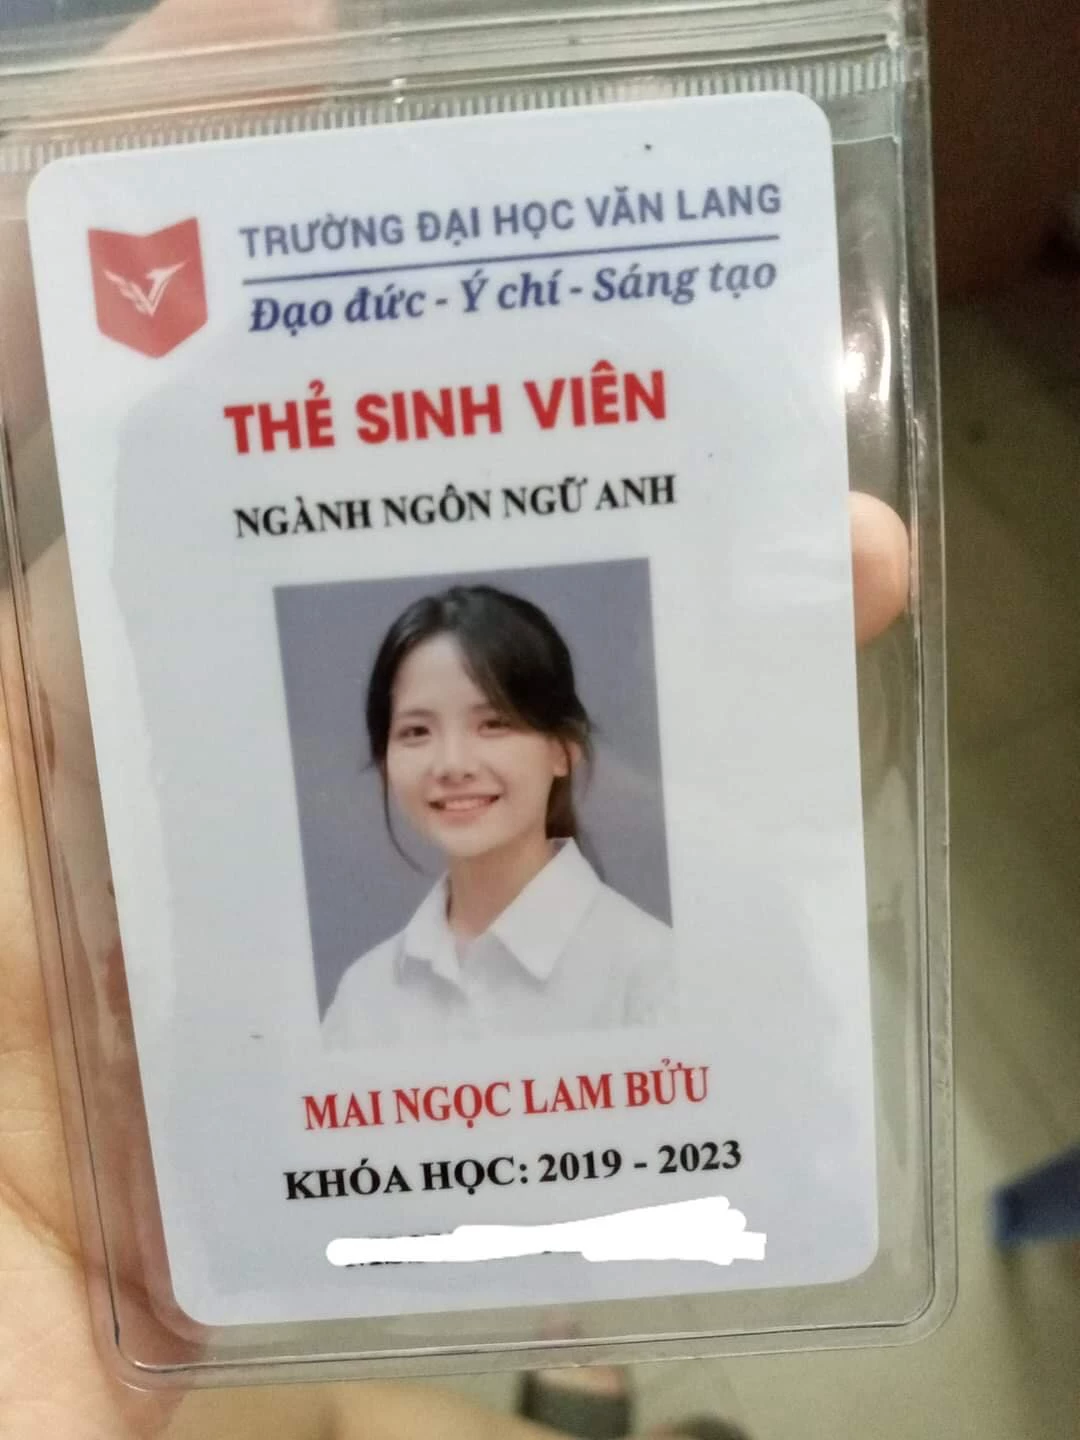 Mới đây, trên diễn đàn "Hội những người thích ngắm gái Châu Á" đăng tải một chiếc thẻ sinh viên của một cô nàng có tên Mai Ngọc Lam Bửu. Tấm ảnh thẻ xinh tới nỗi cô được cộng đồng mạng gọi với cái tên " hot girl ảnh thẻ" thế hệ mới.